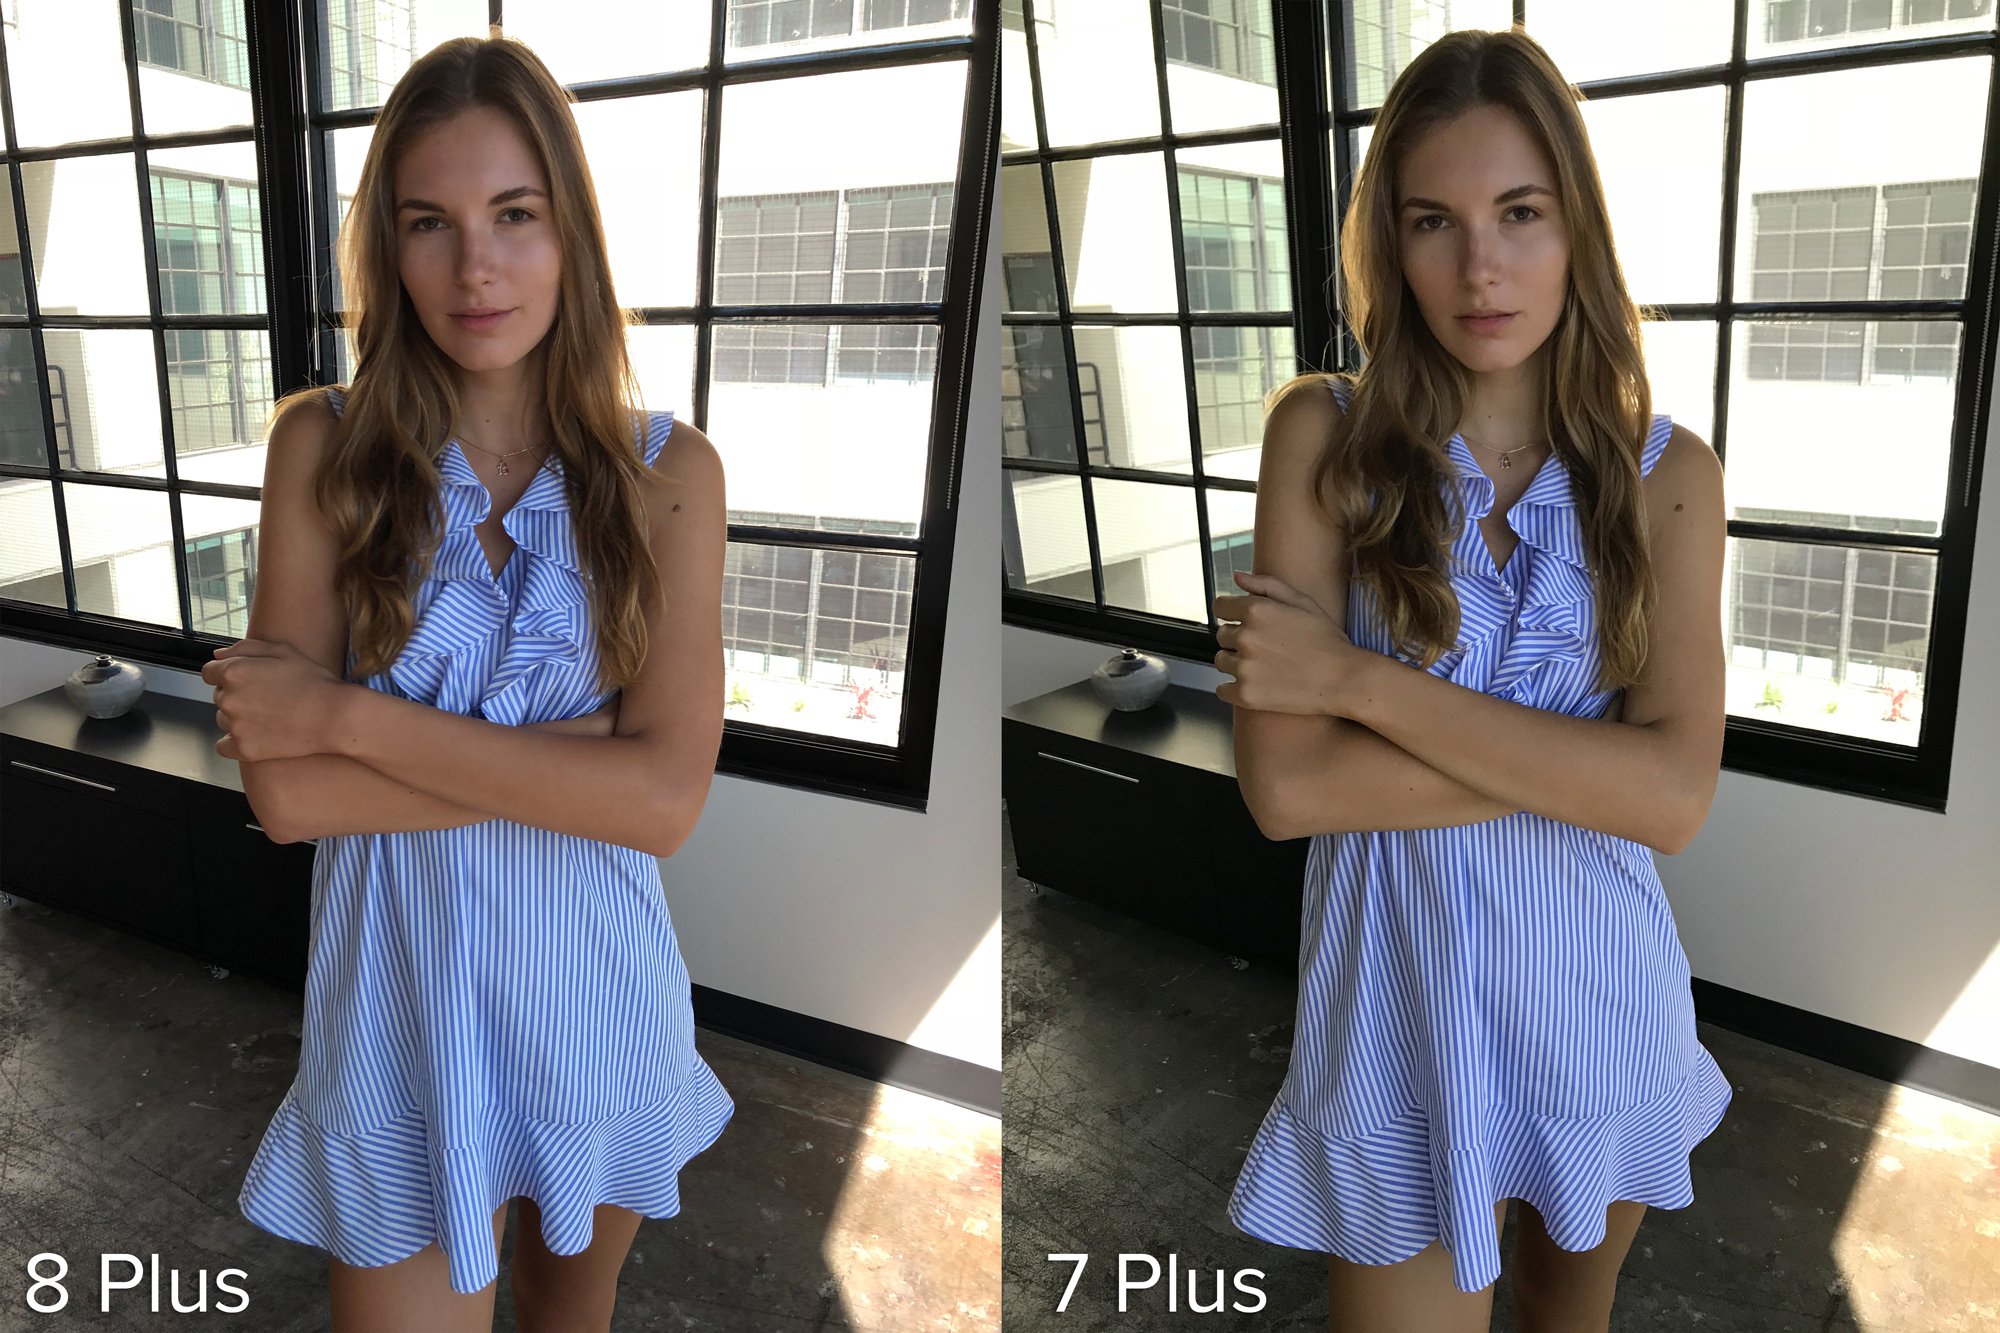 iphone 8 plus photos vs iphone 7 plus 02